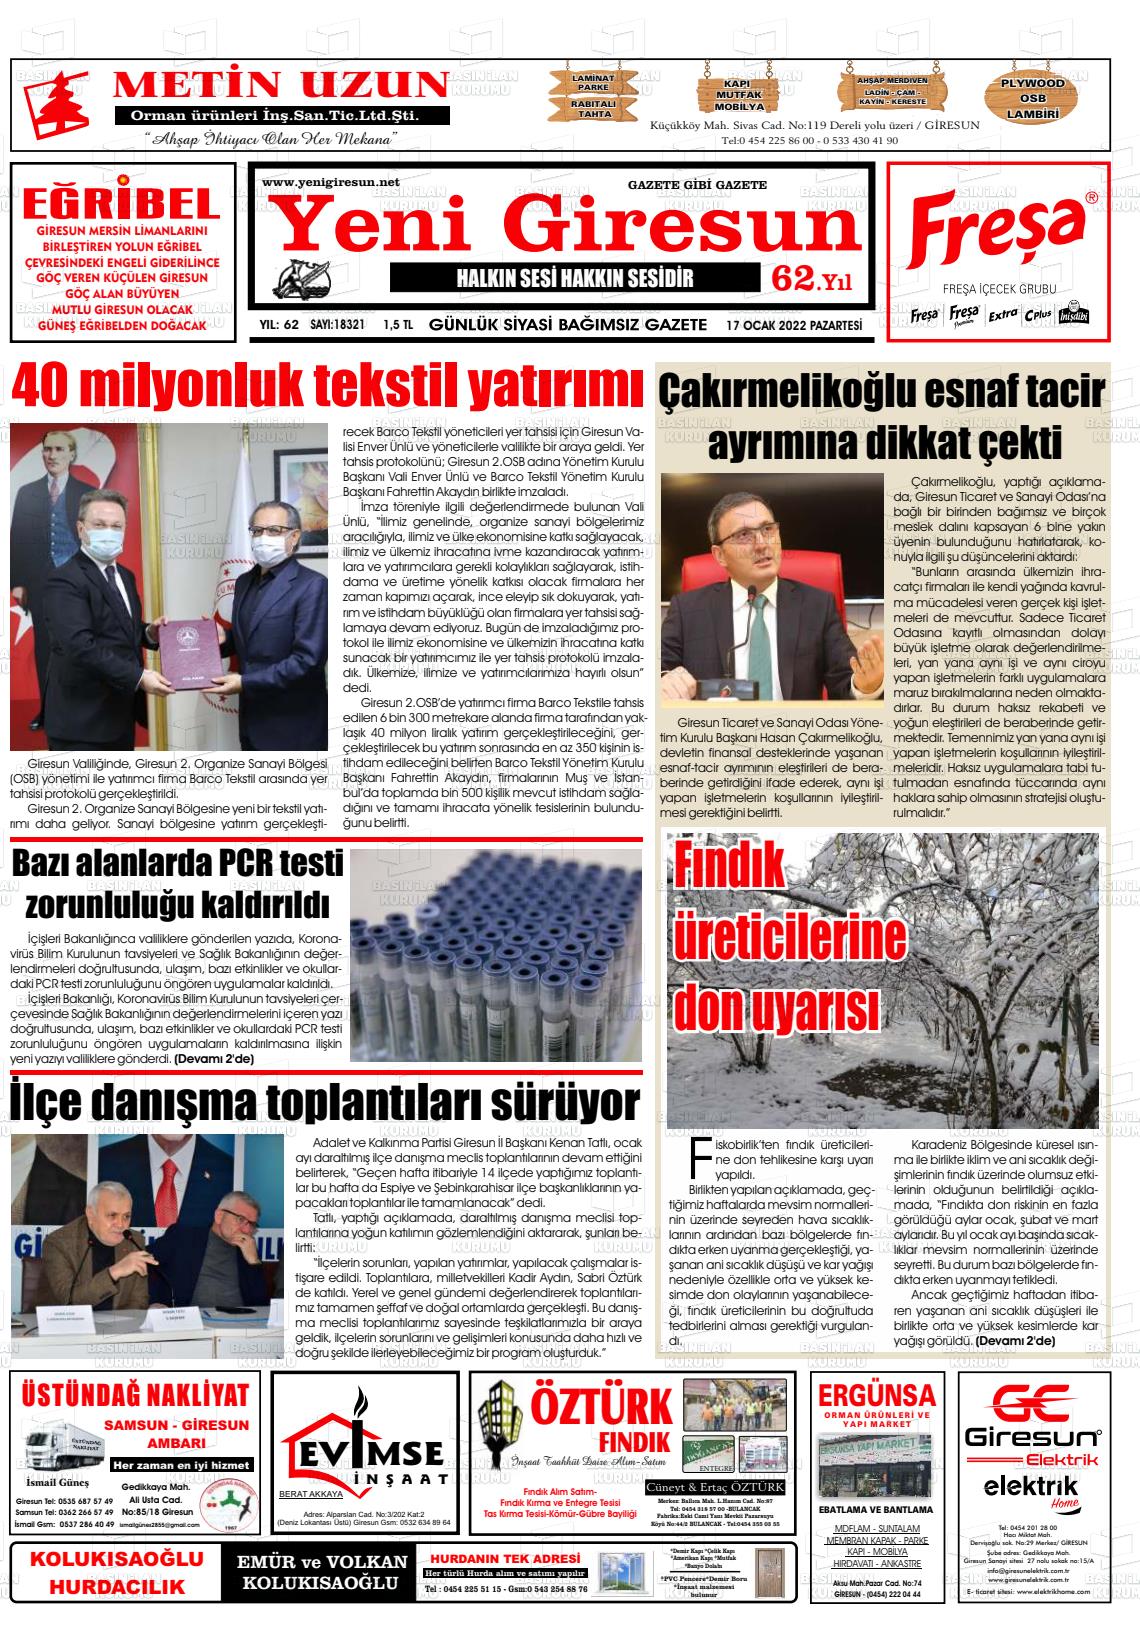 17 Ocak 2022 Yeni Giresun Gazete Manşeti